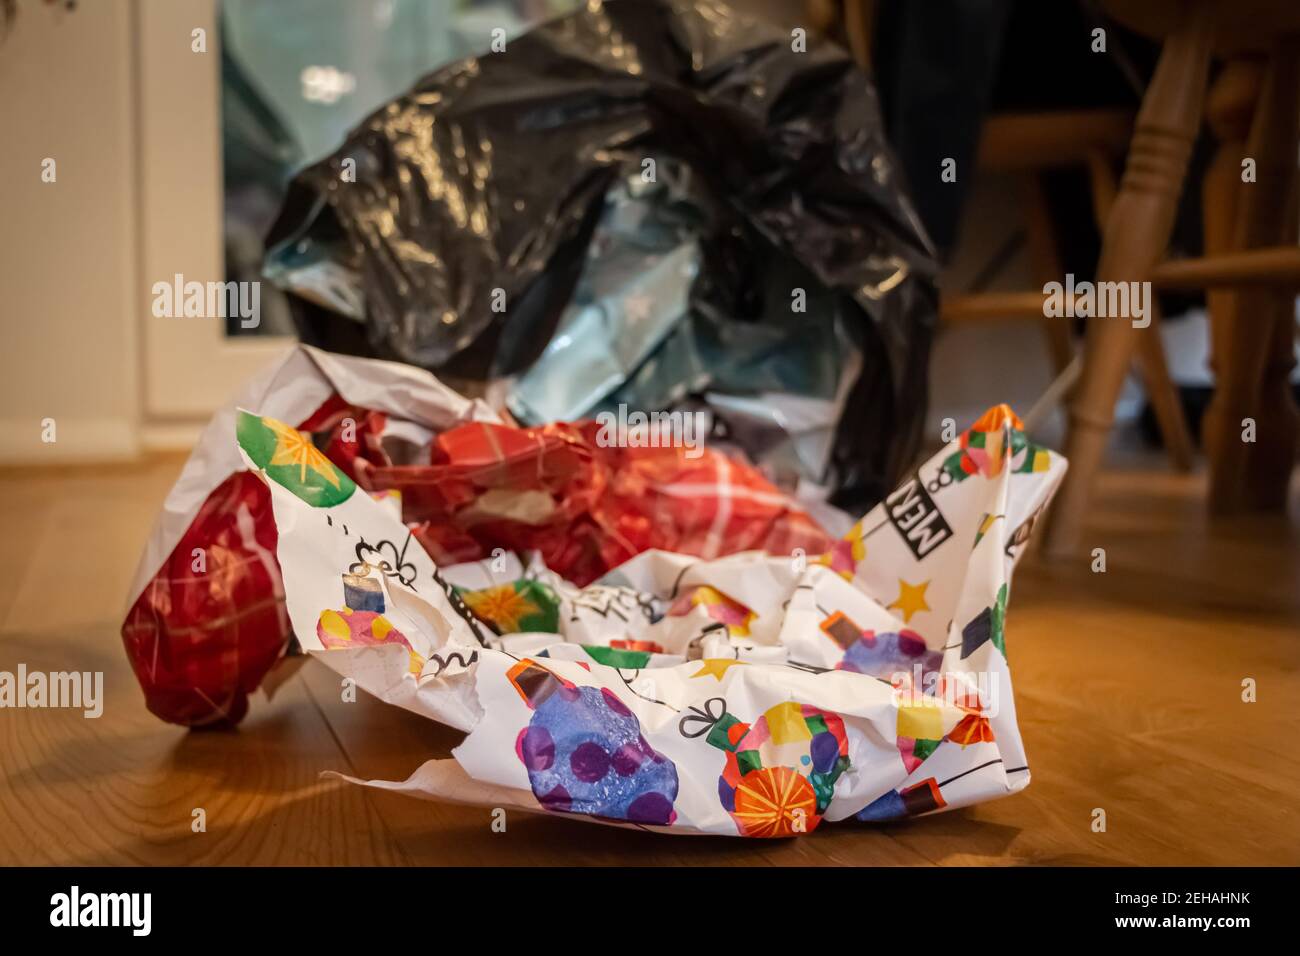 Weihnachten Verpackung Papierabfall in einem Müllbeutel liegend auf einem Holzboden am Weihnachtstag, nachdem Geschenke geöffnet worden waren Stockfoto